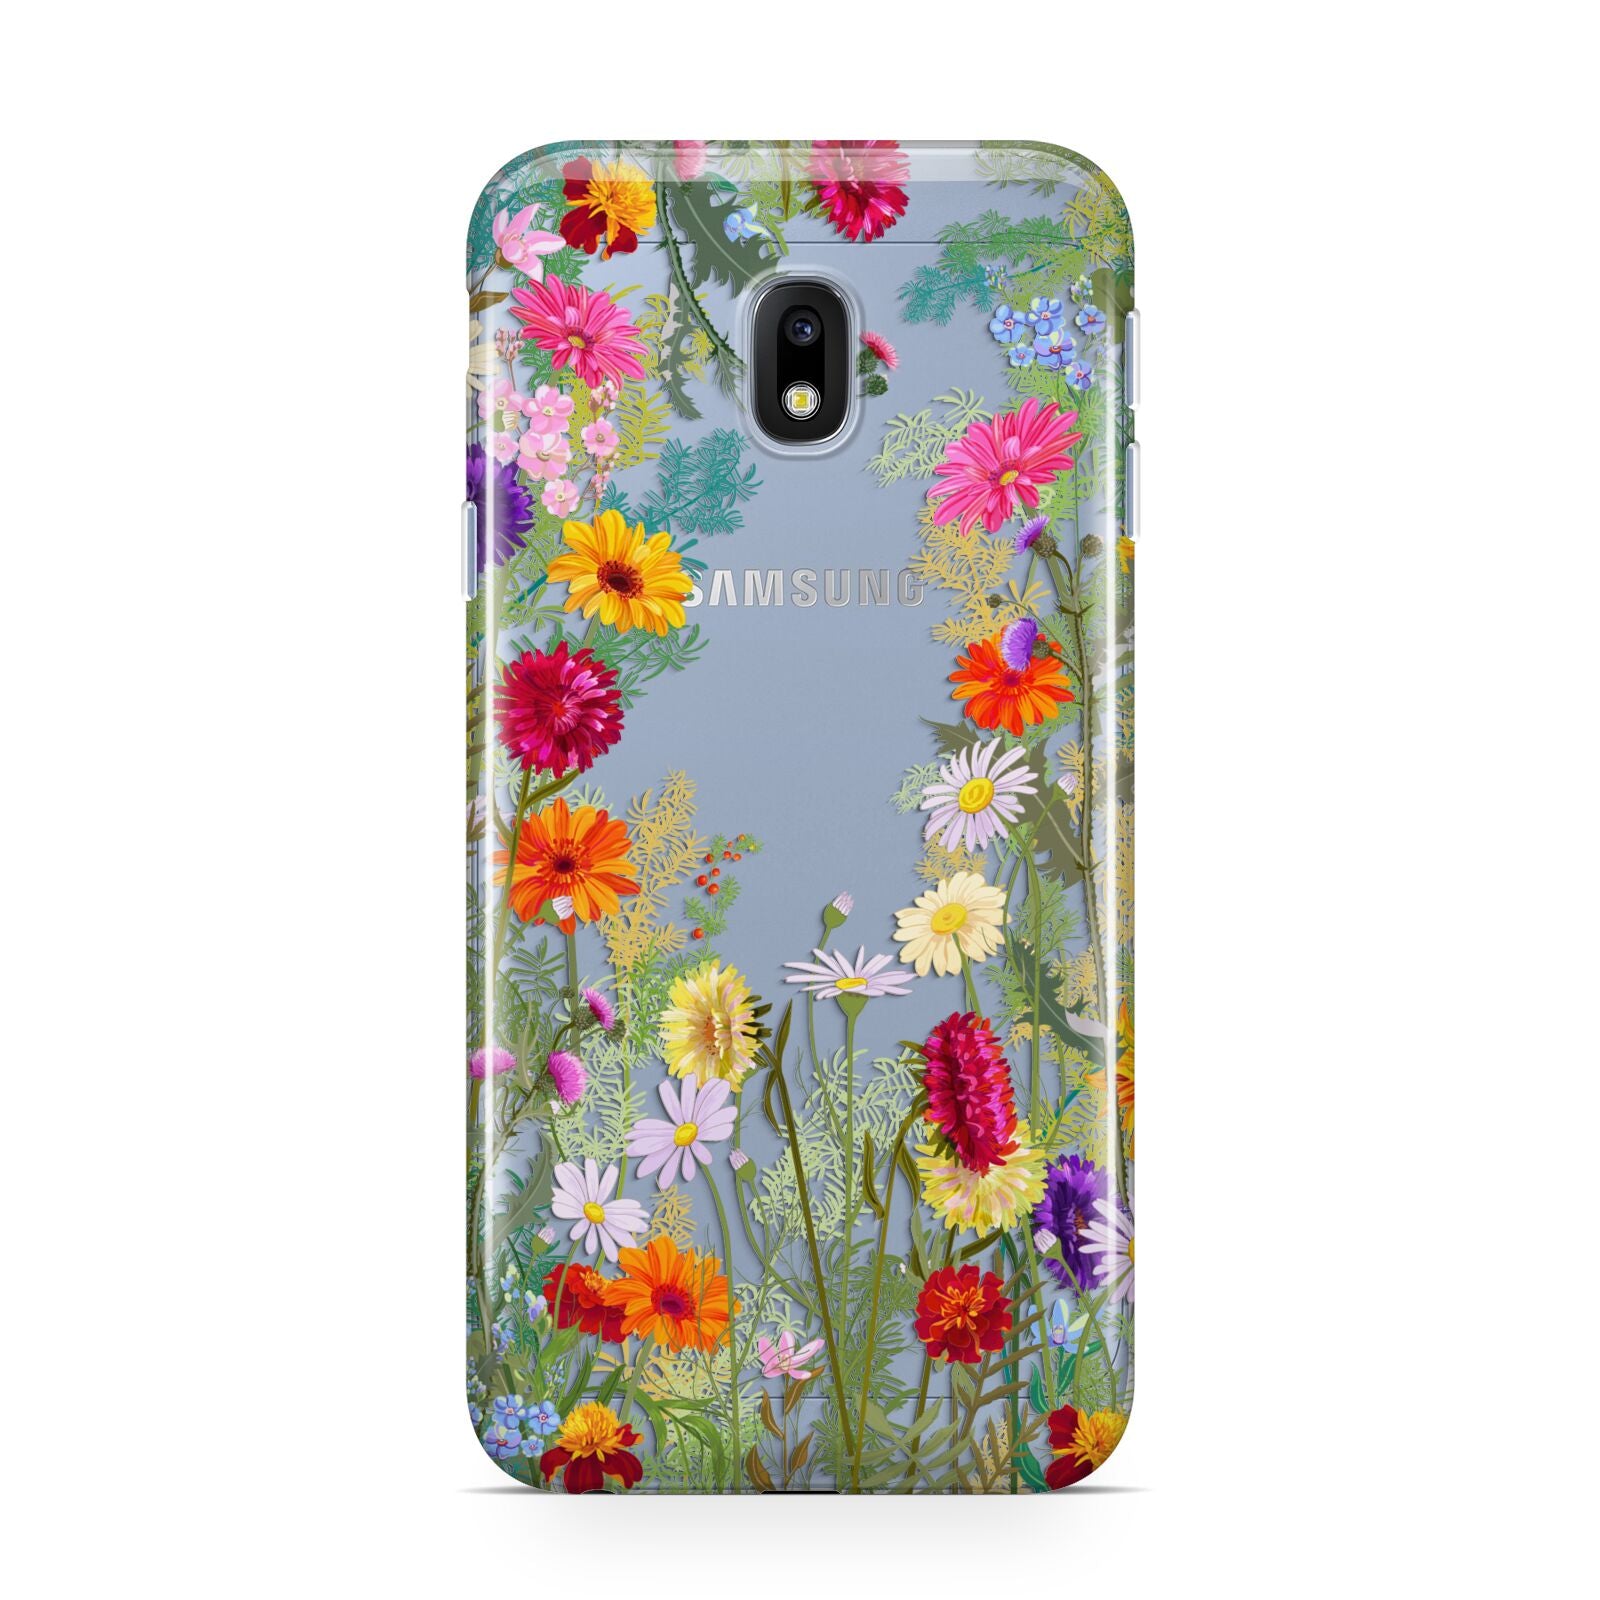 Wildflower Samsung Galaxy J3 2017 Case